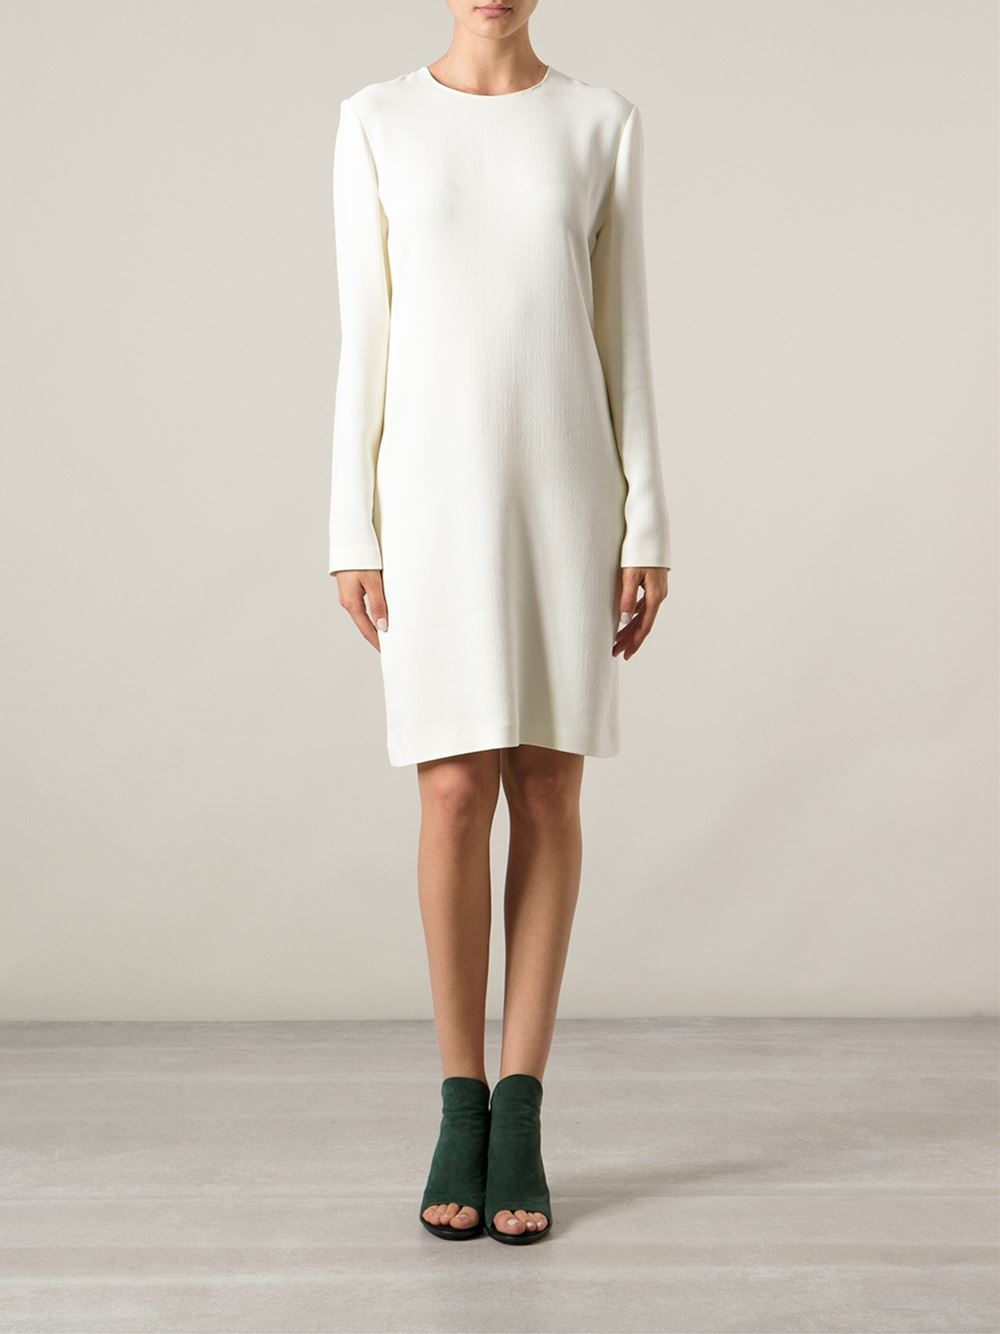 Lyst - Calvin Klein Long Sleeved Dress in White